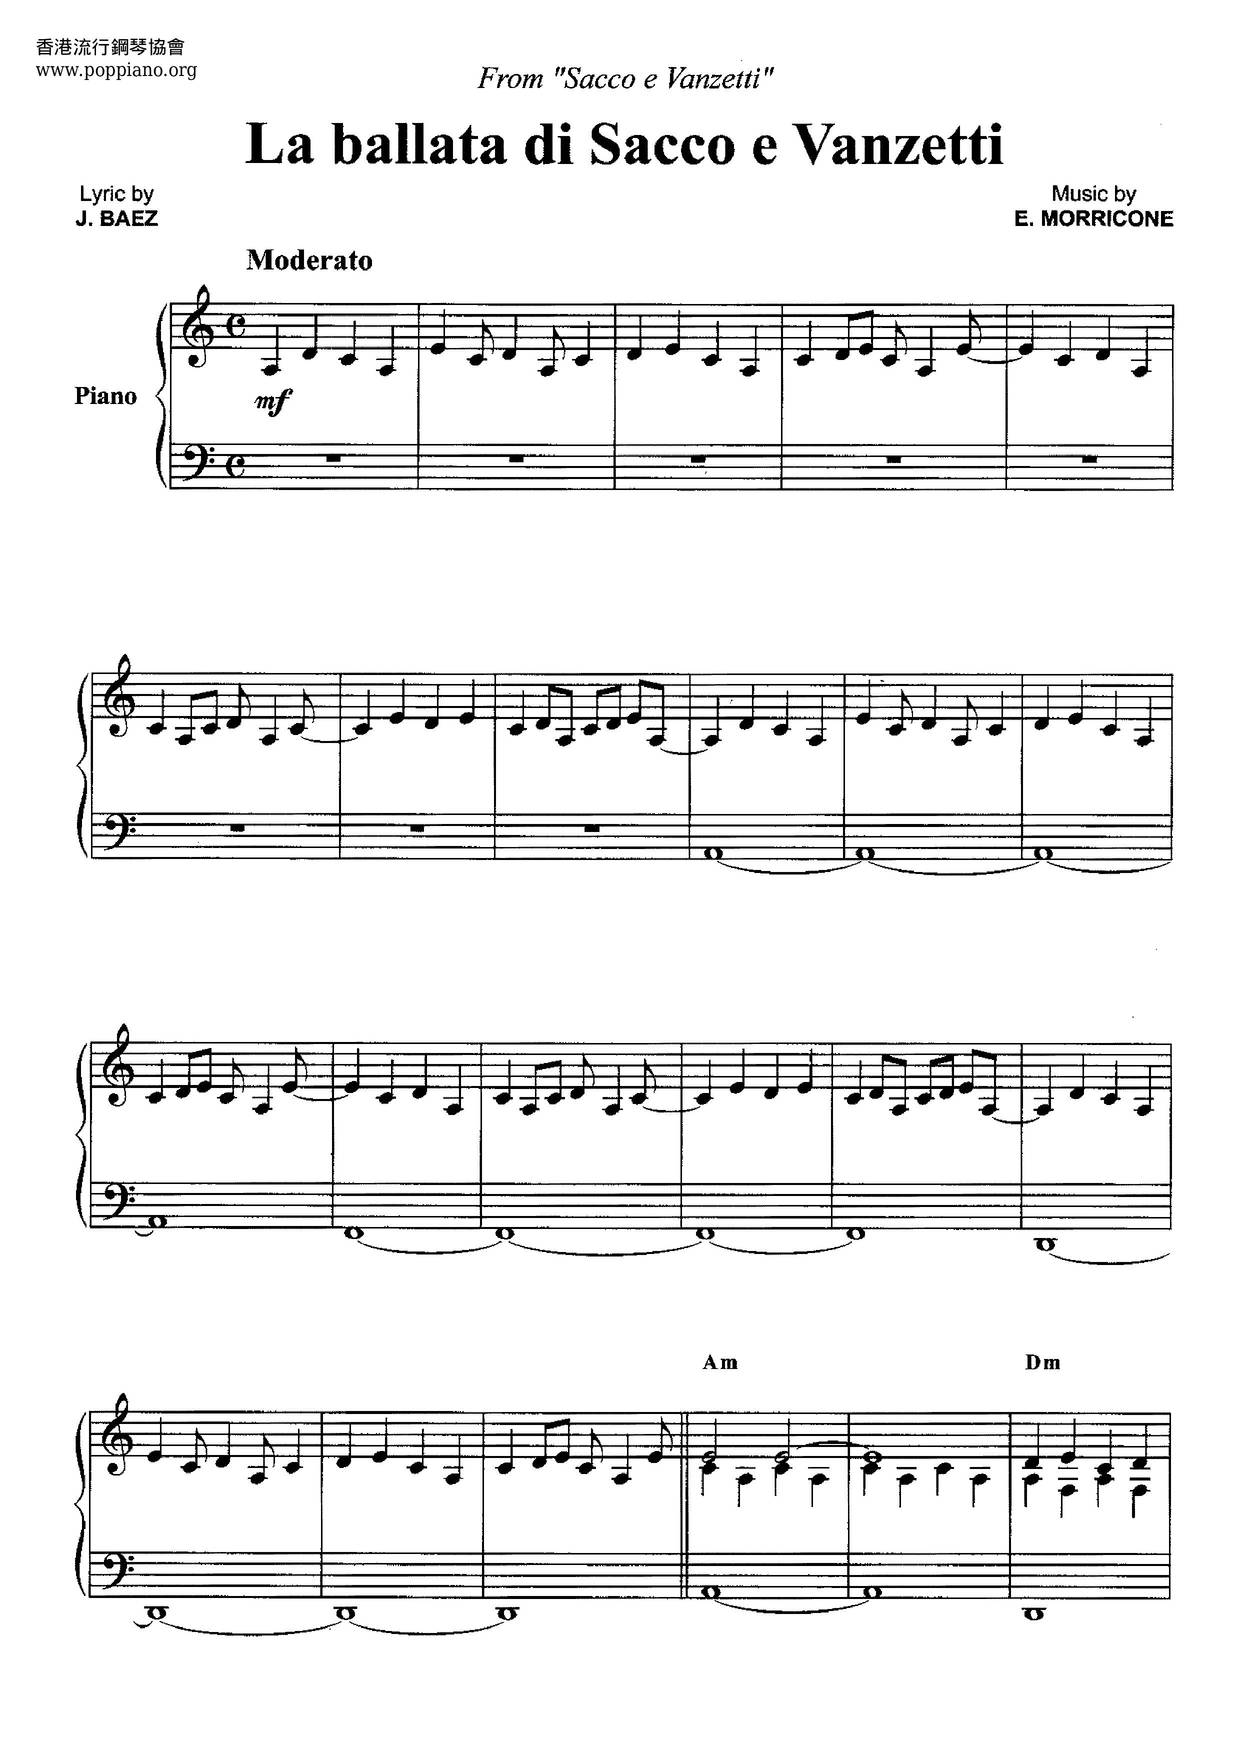 Sacco E Vanzetti - La Ballata Di Sacco E Vanzetti Score